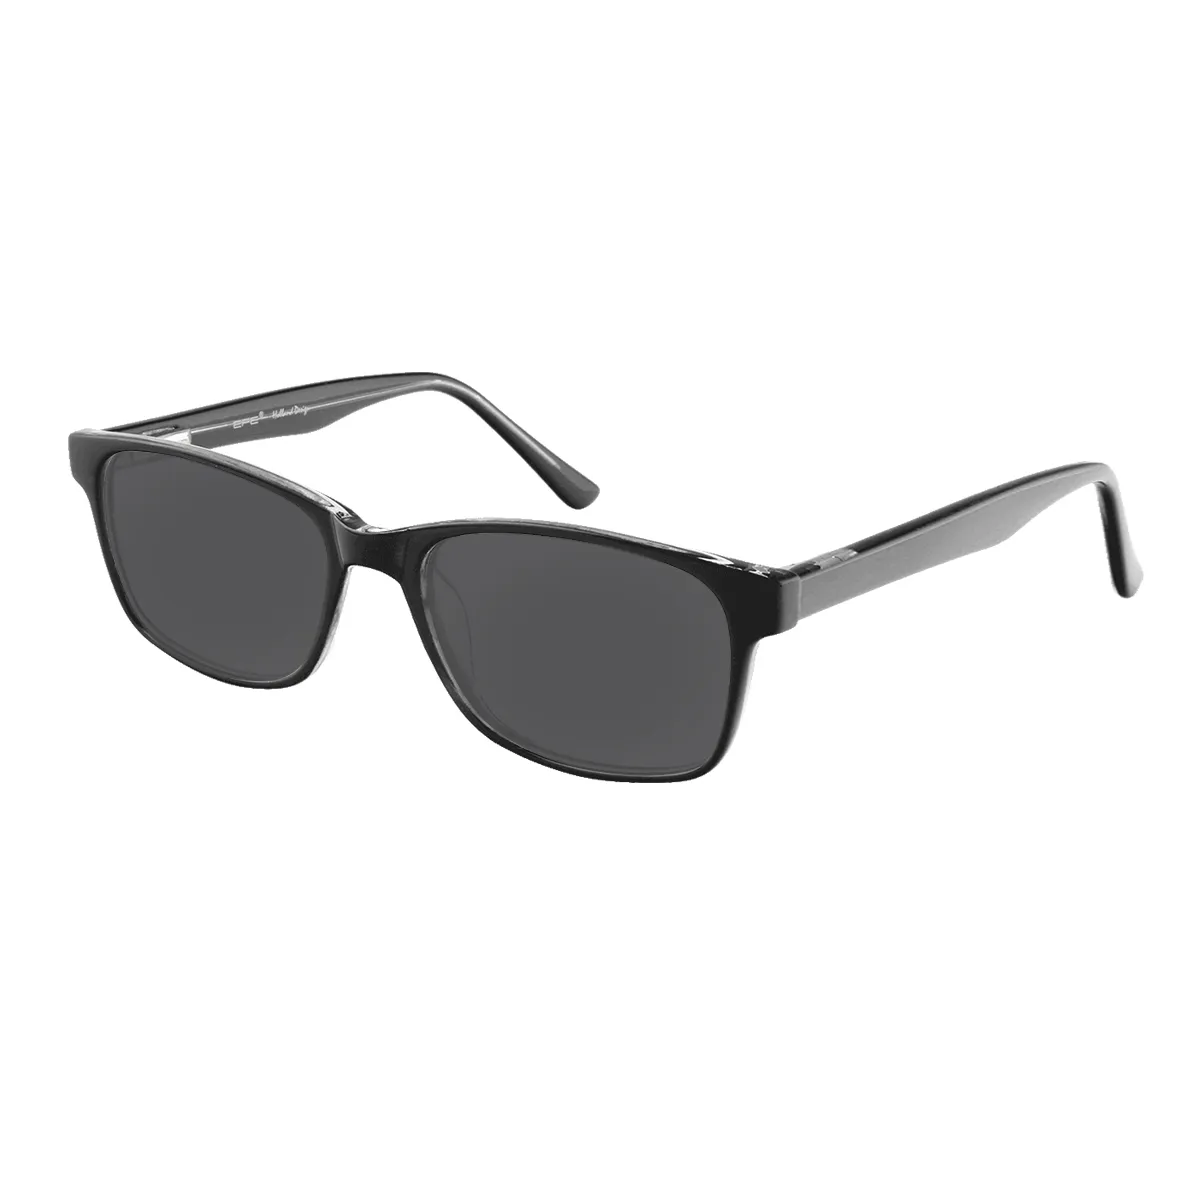 Bragg - Rectangle Black Sunglasses for Men & Women